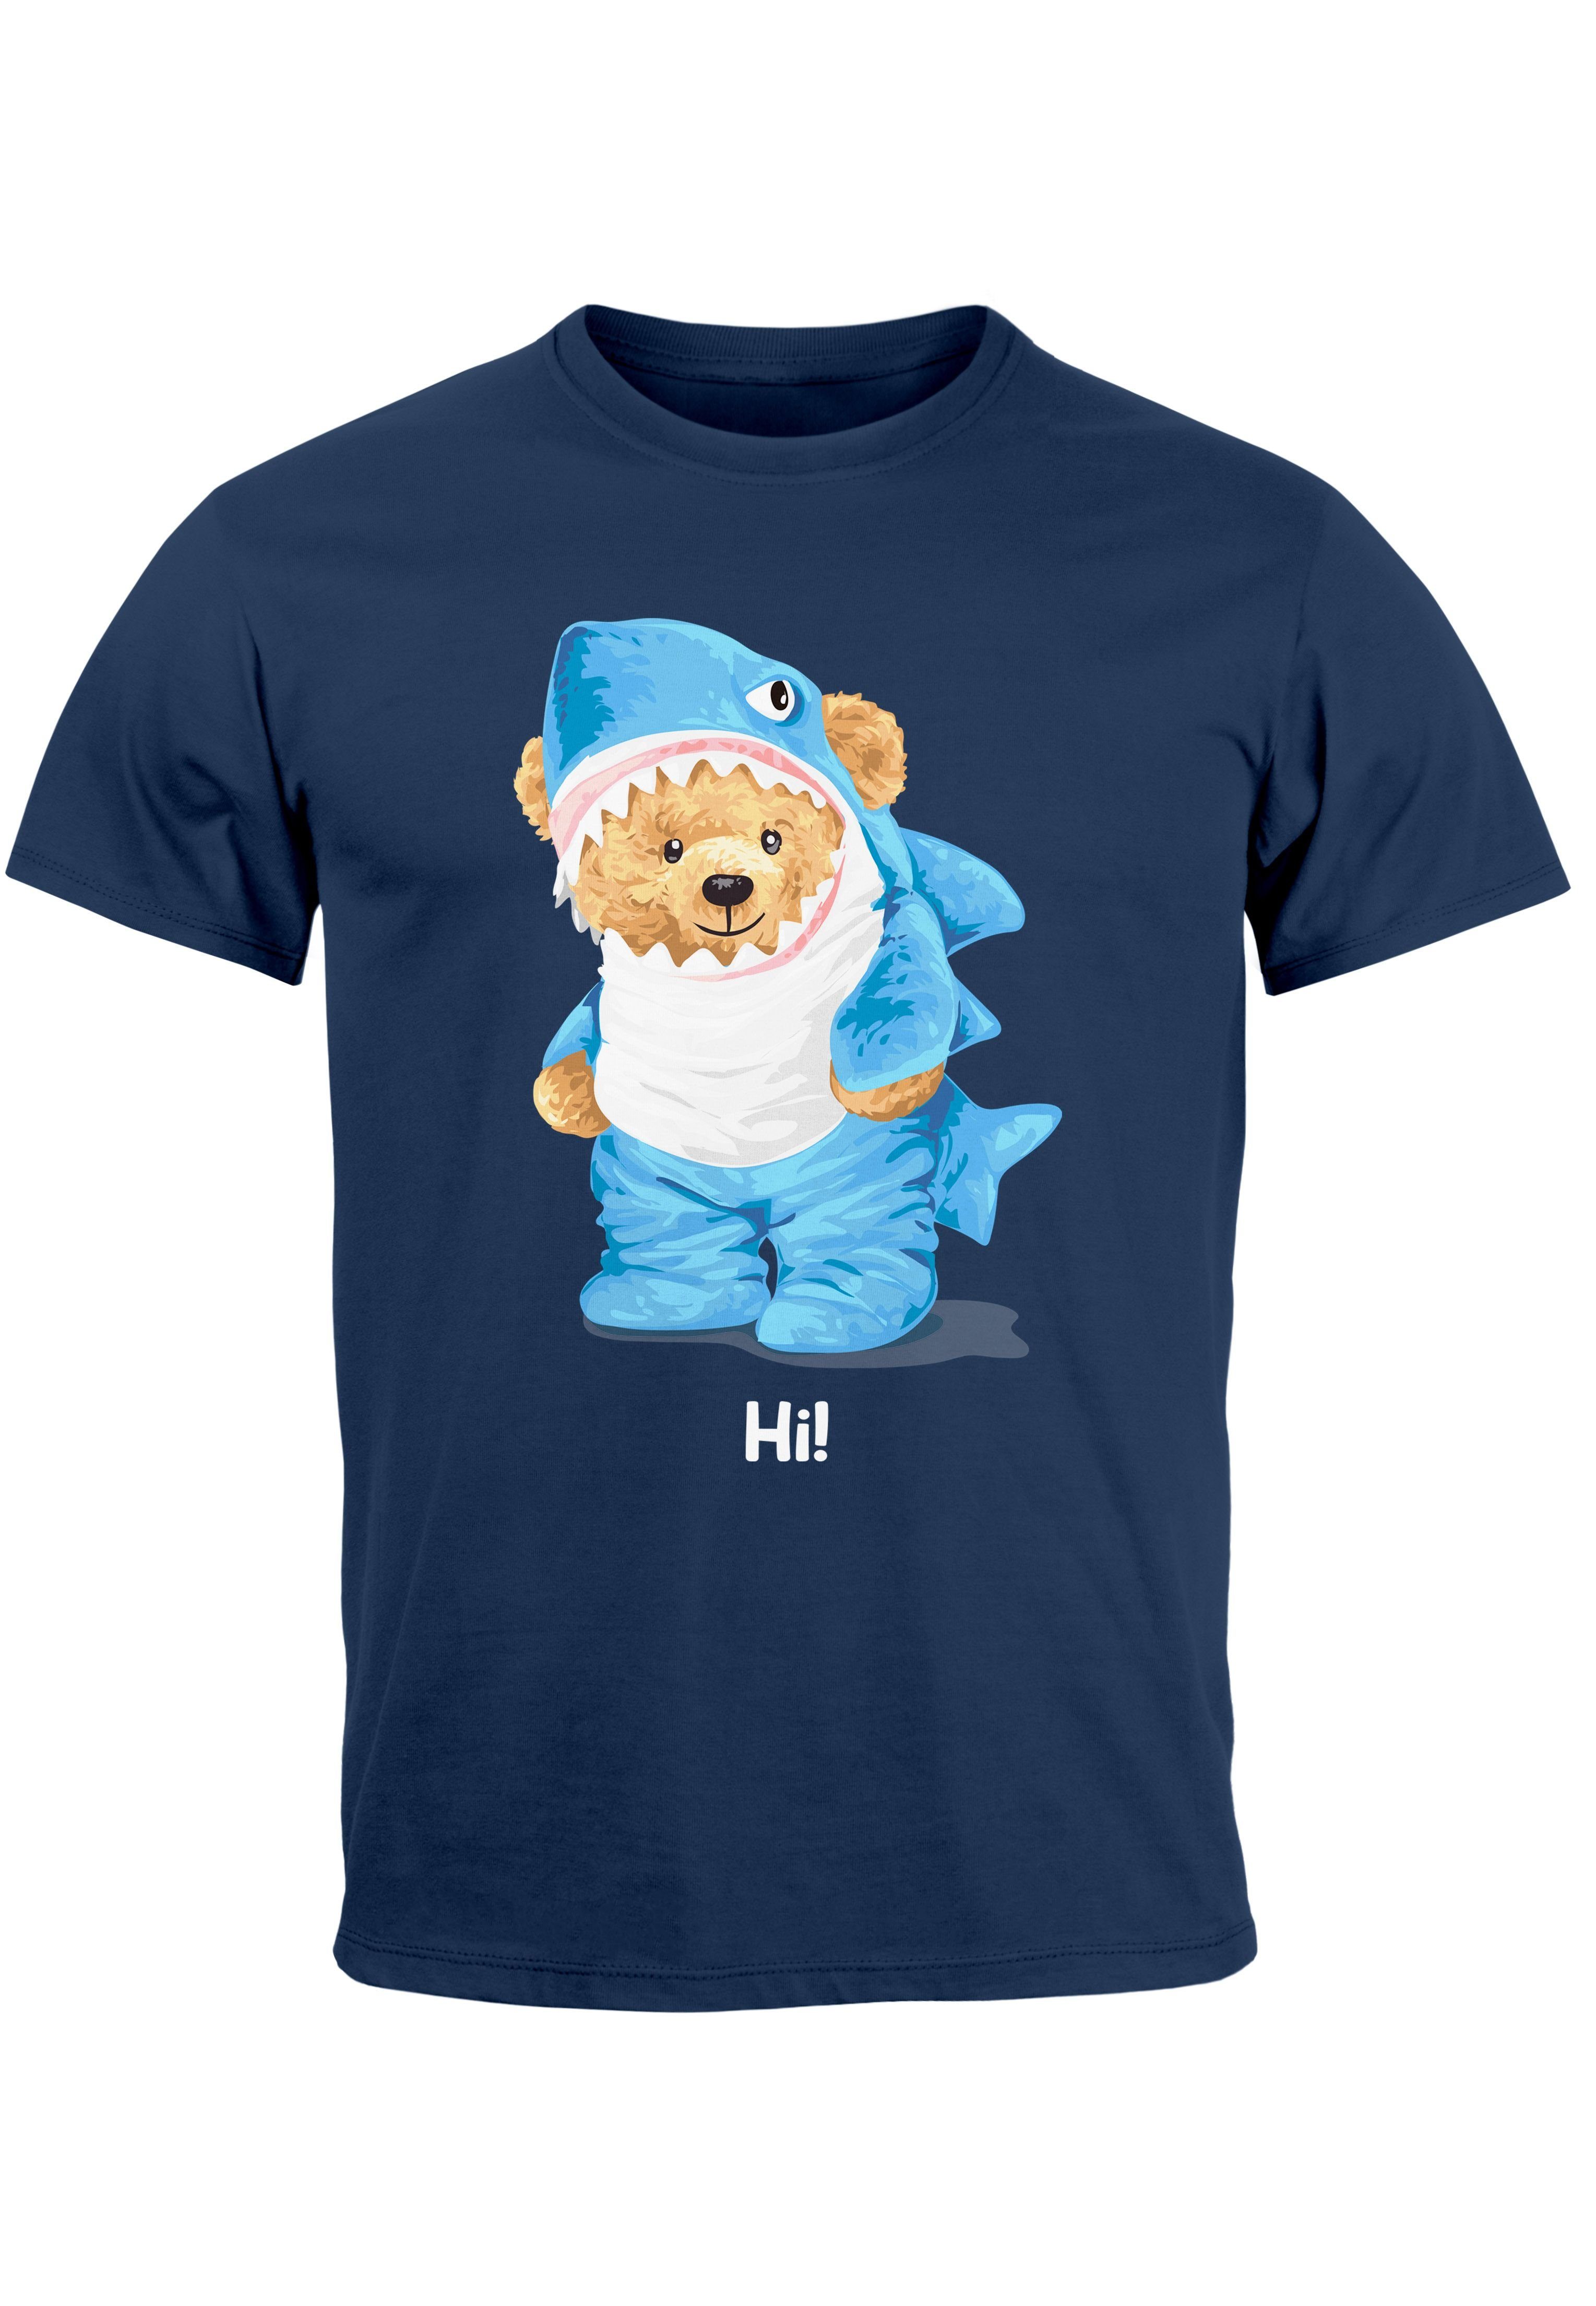 Neverless Print-Shirt Herren T-Shirt Hai Hi Teddy Bär Witz Parodie Printshirt Aufdruck Fashi mit Print navy